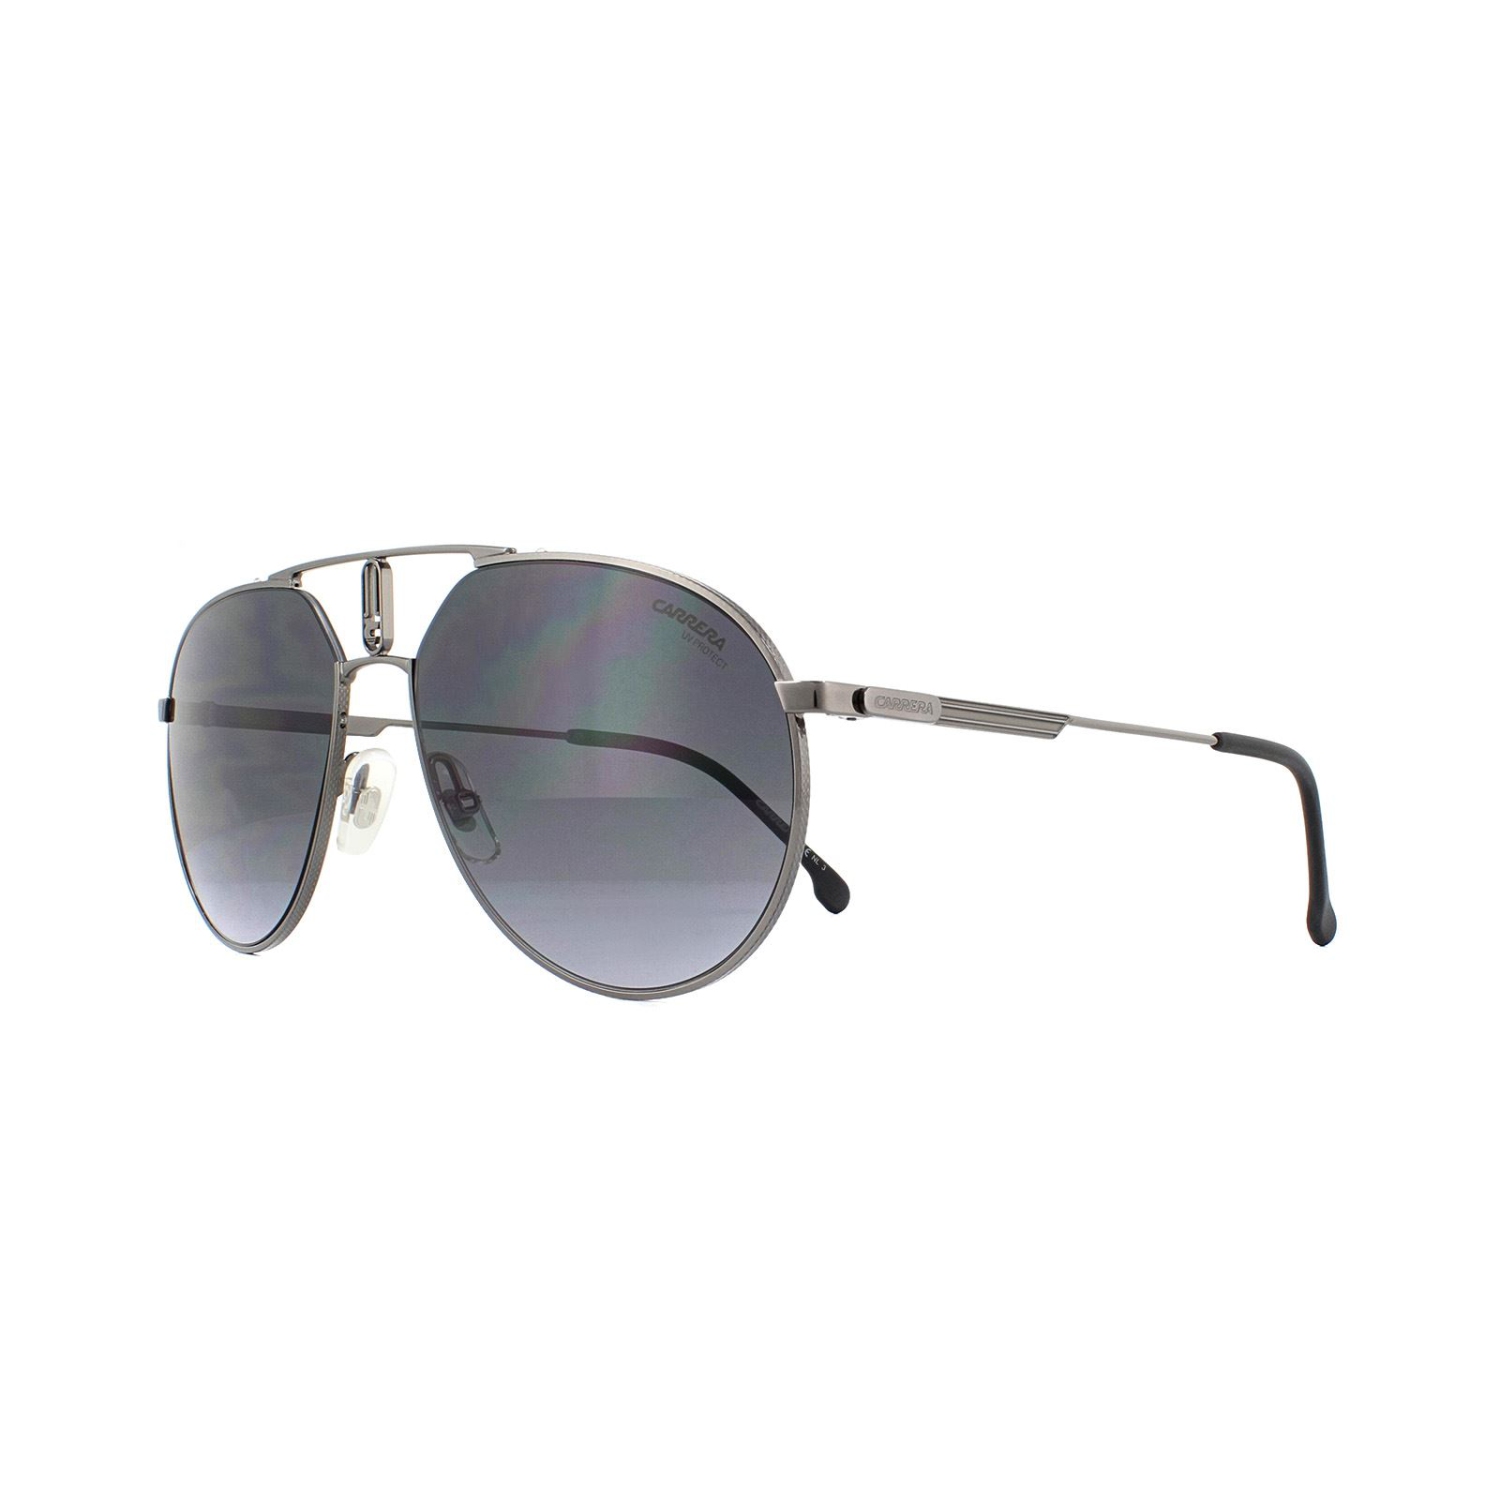 CARRERA Men's Silver Tone Round Sunglasses 1025/S 0KJ1 O 59